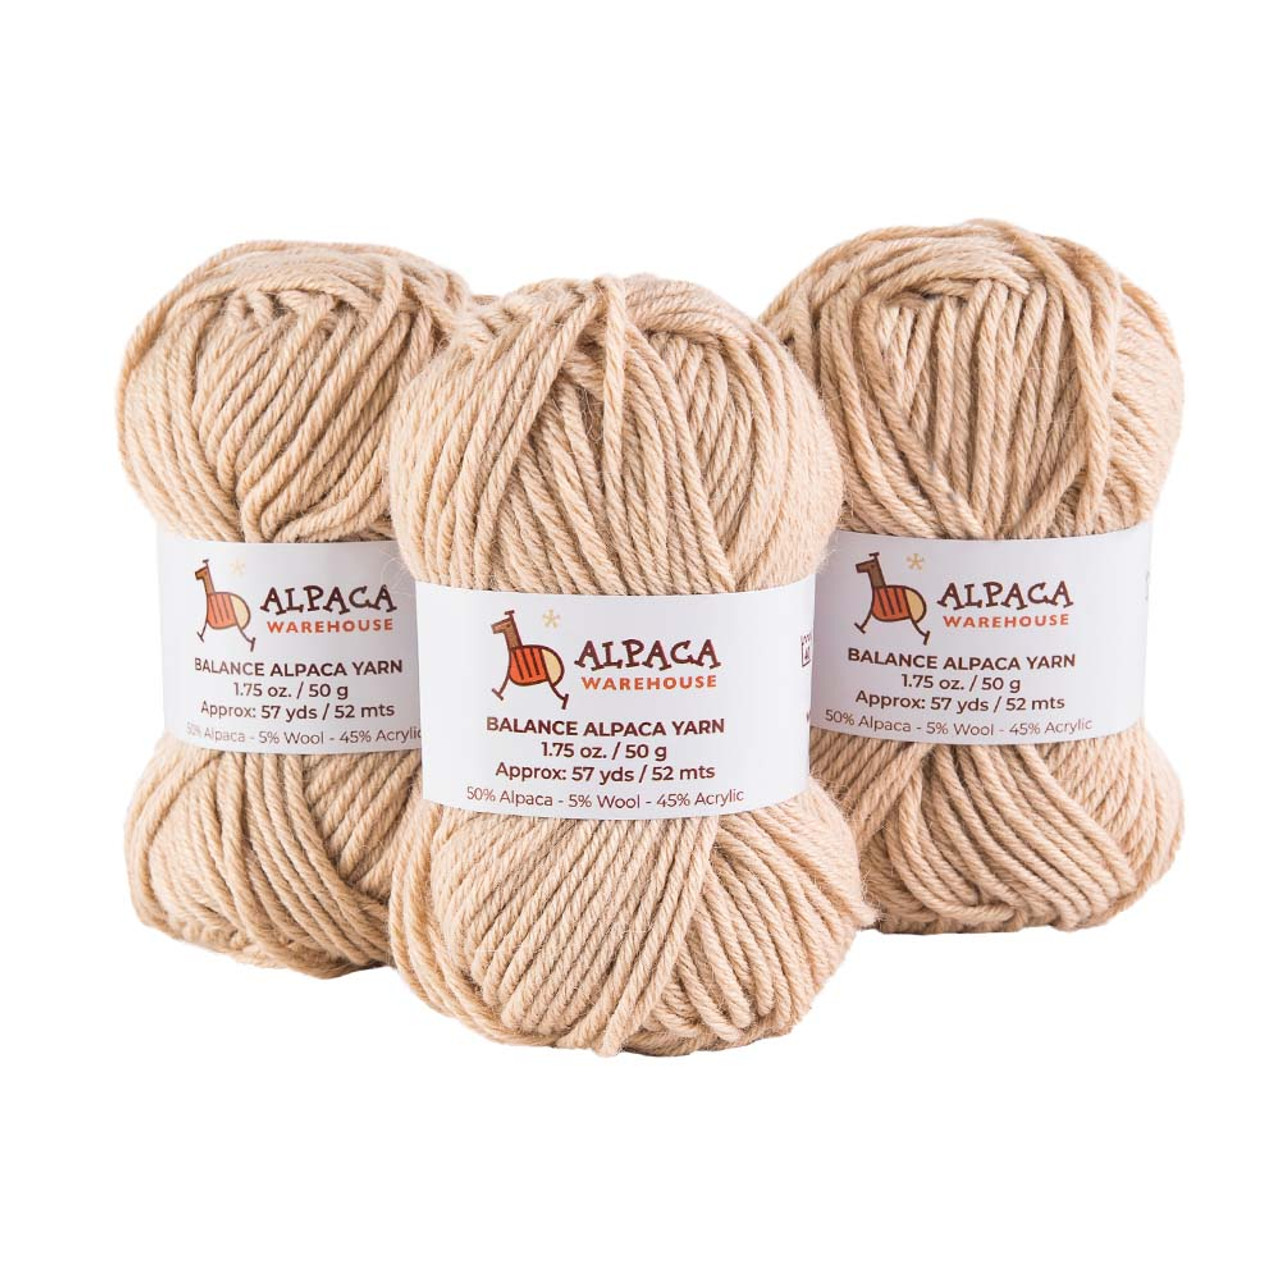 Blend Alpaca Yarn Wool 1 Skein 100 Grams Bulky Weight - Alpaca Warehouse